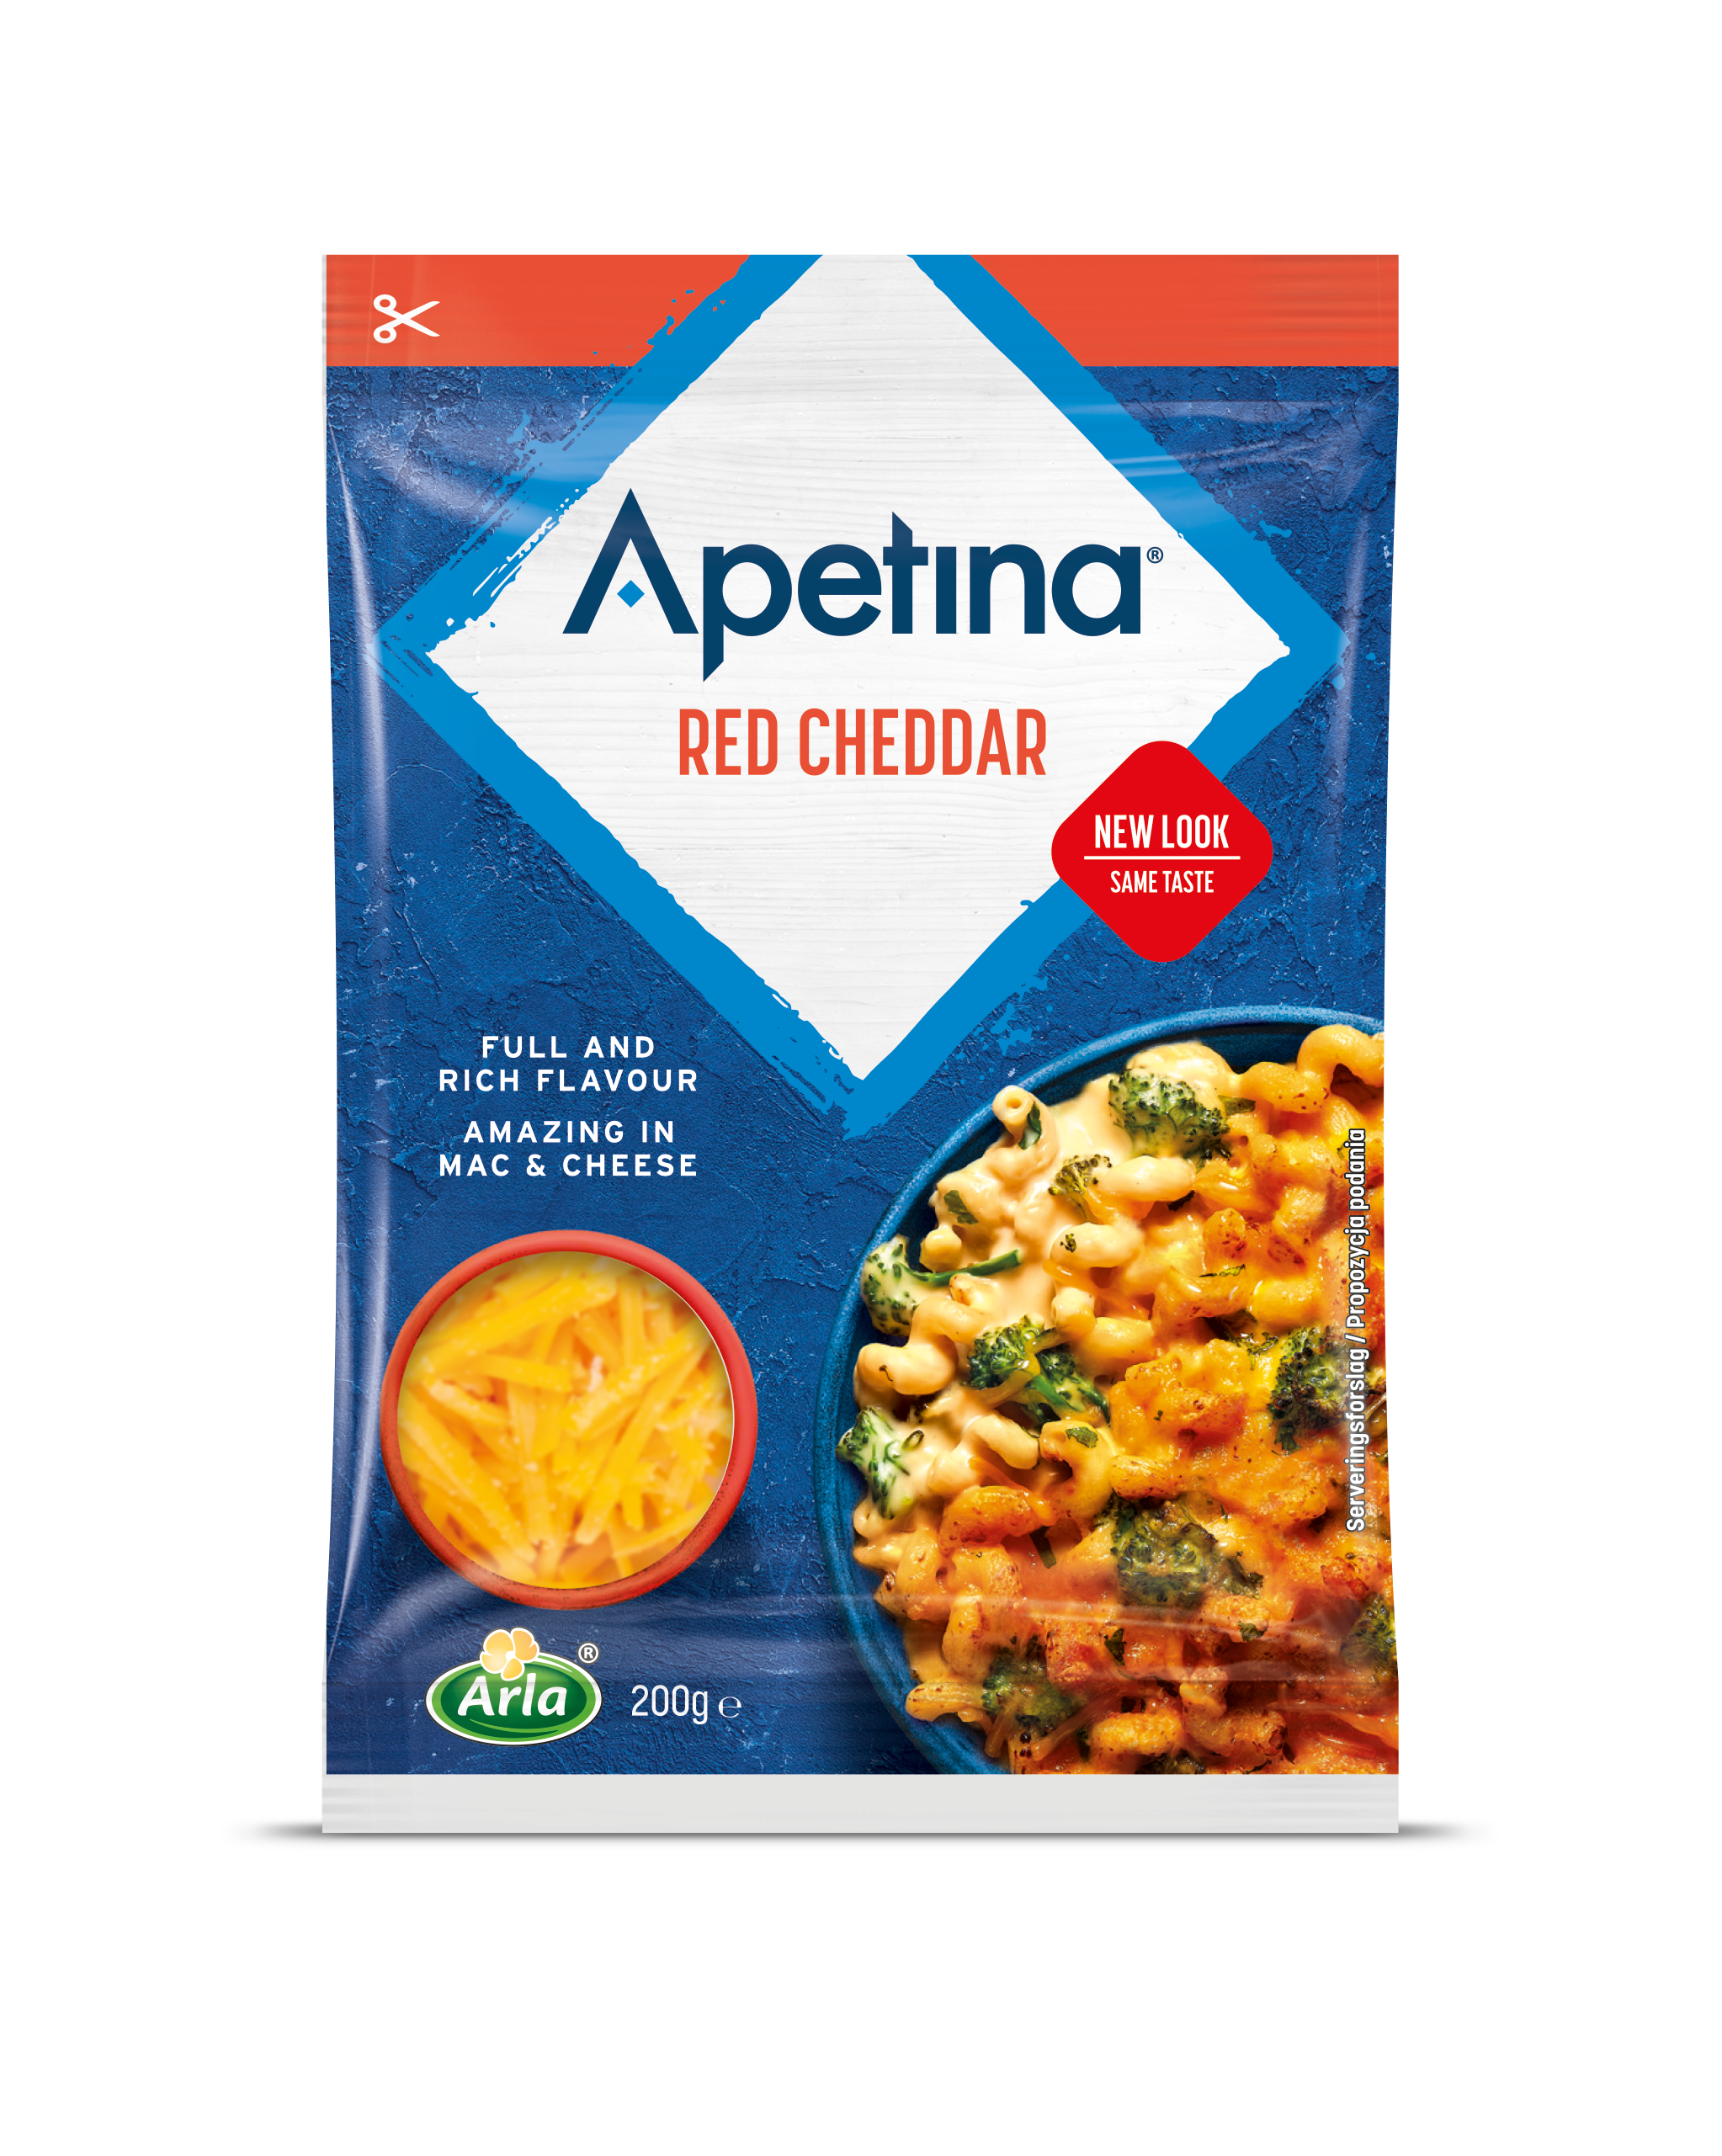 Apetina Apetina revet cheddar  Arla Foods meieriprodukter gir deg en  naturlig godhet hver dag, hele dagen